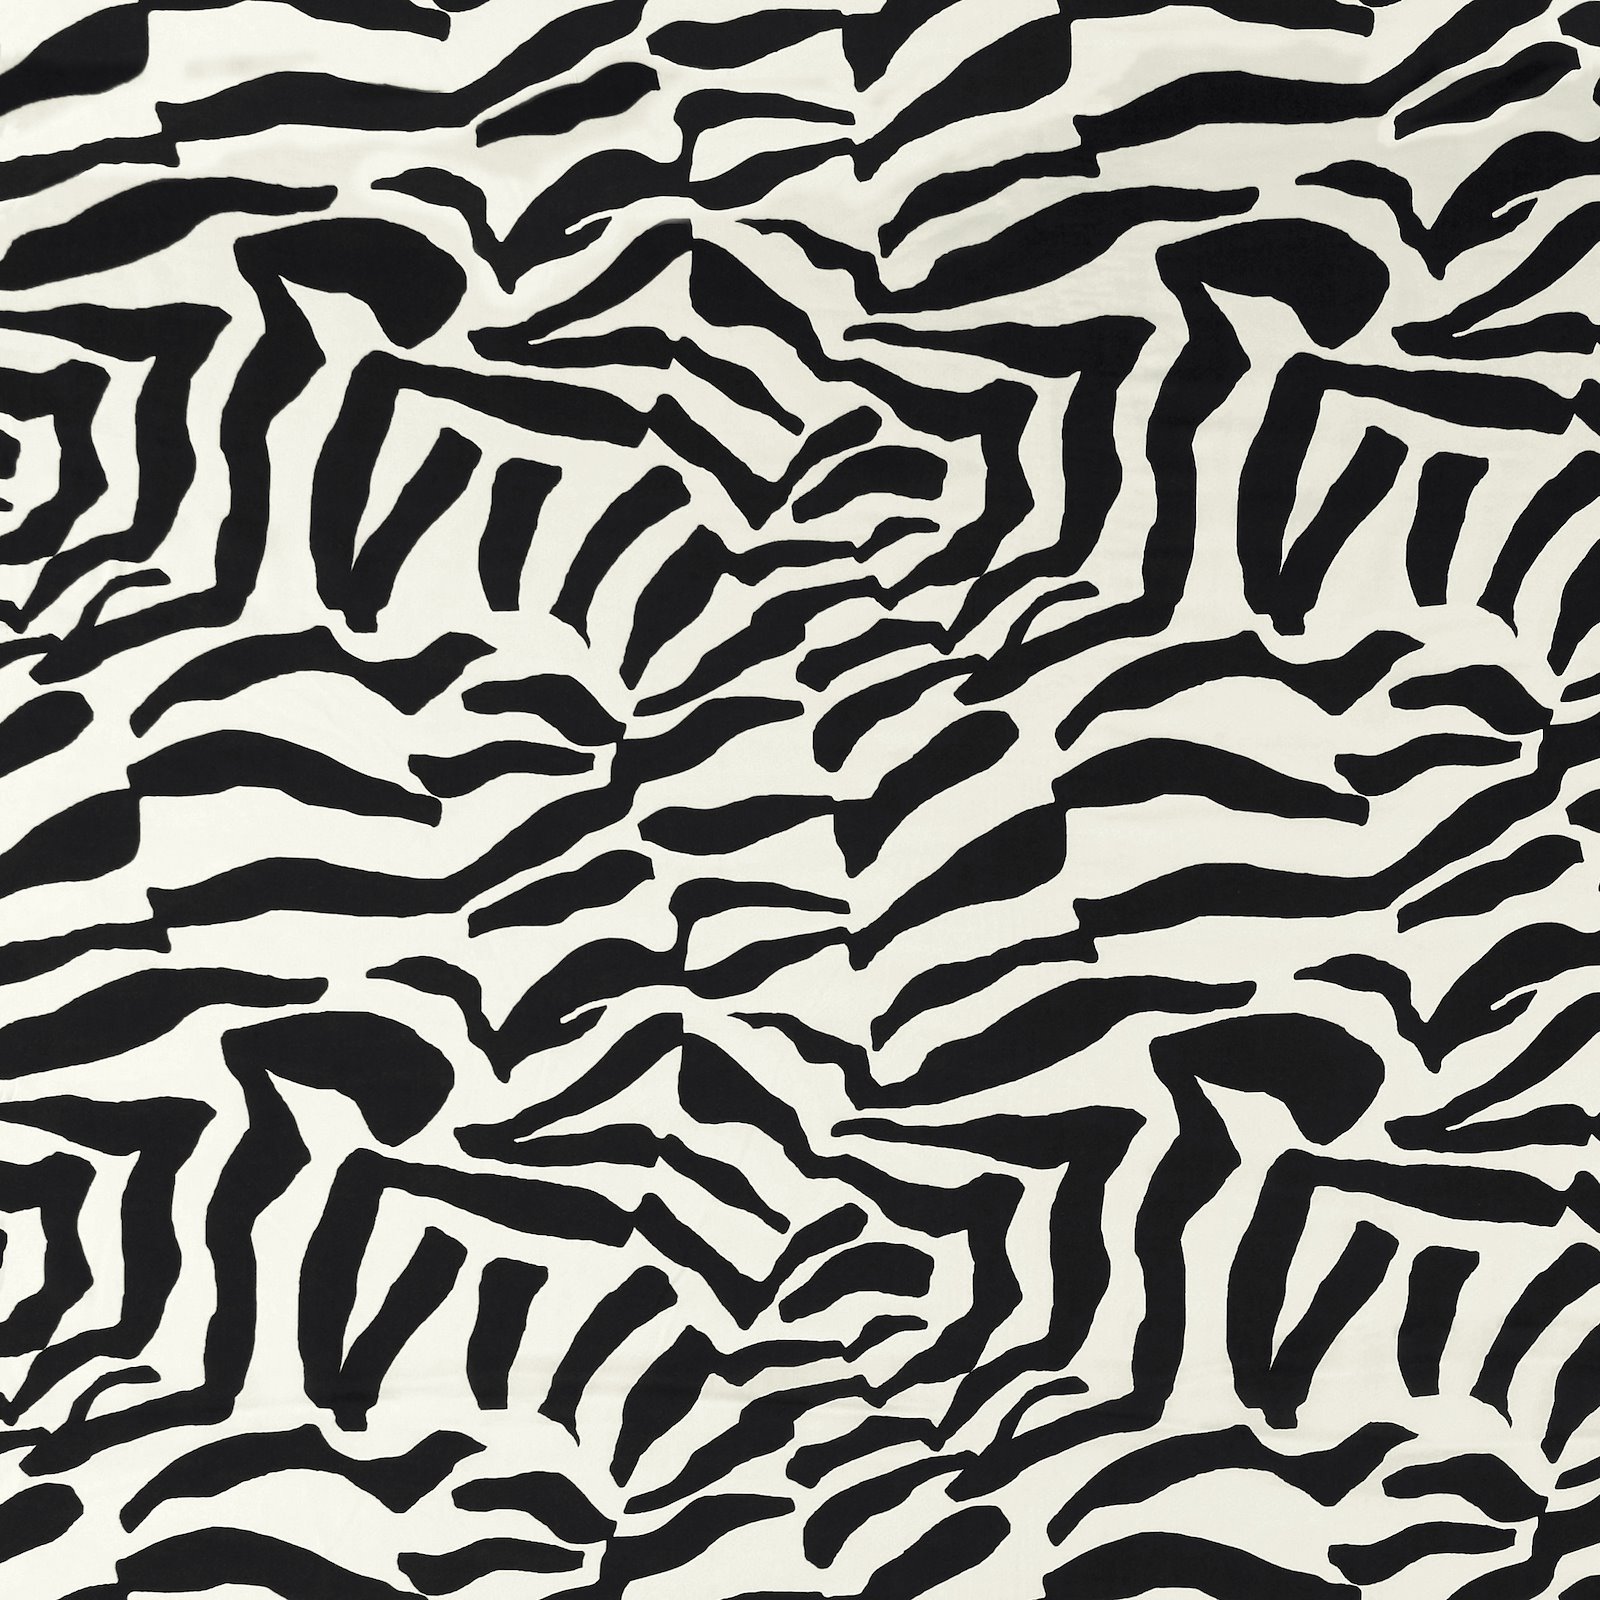 Viskose schwarz weiß zebra 710802_pack_sp